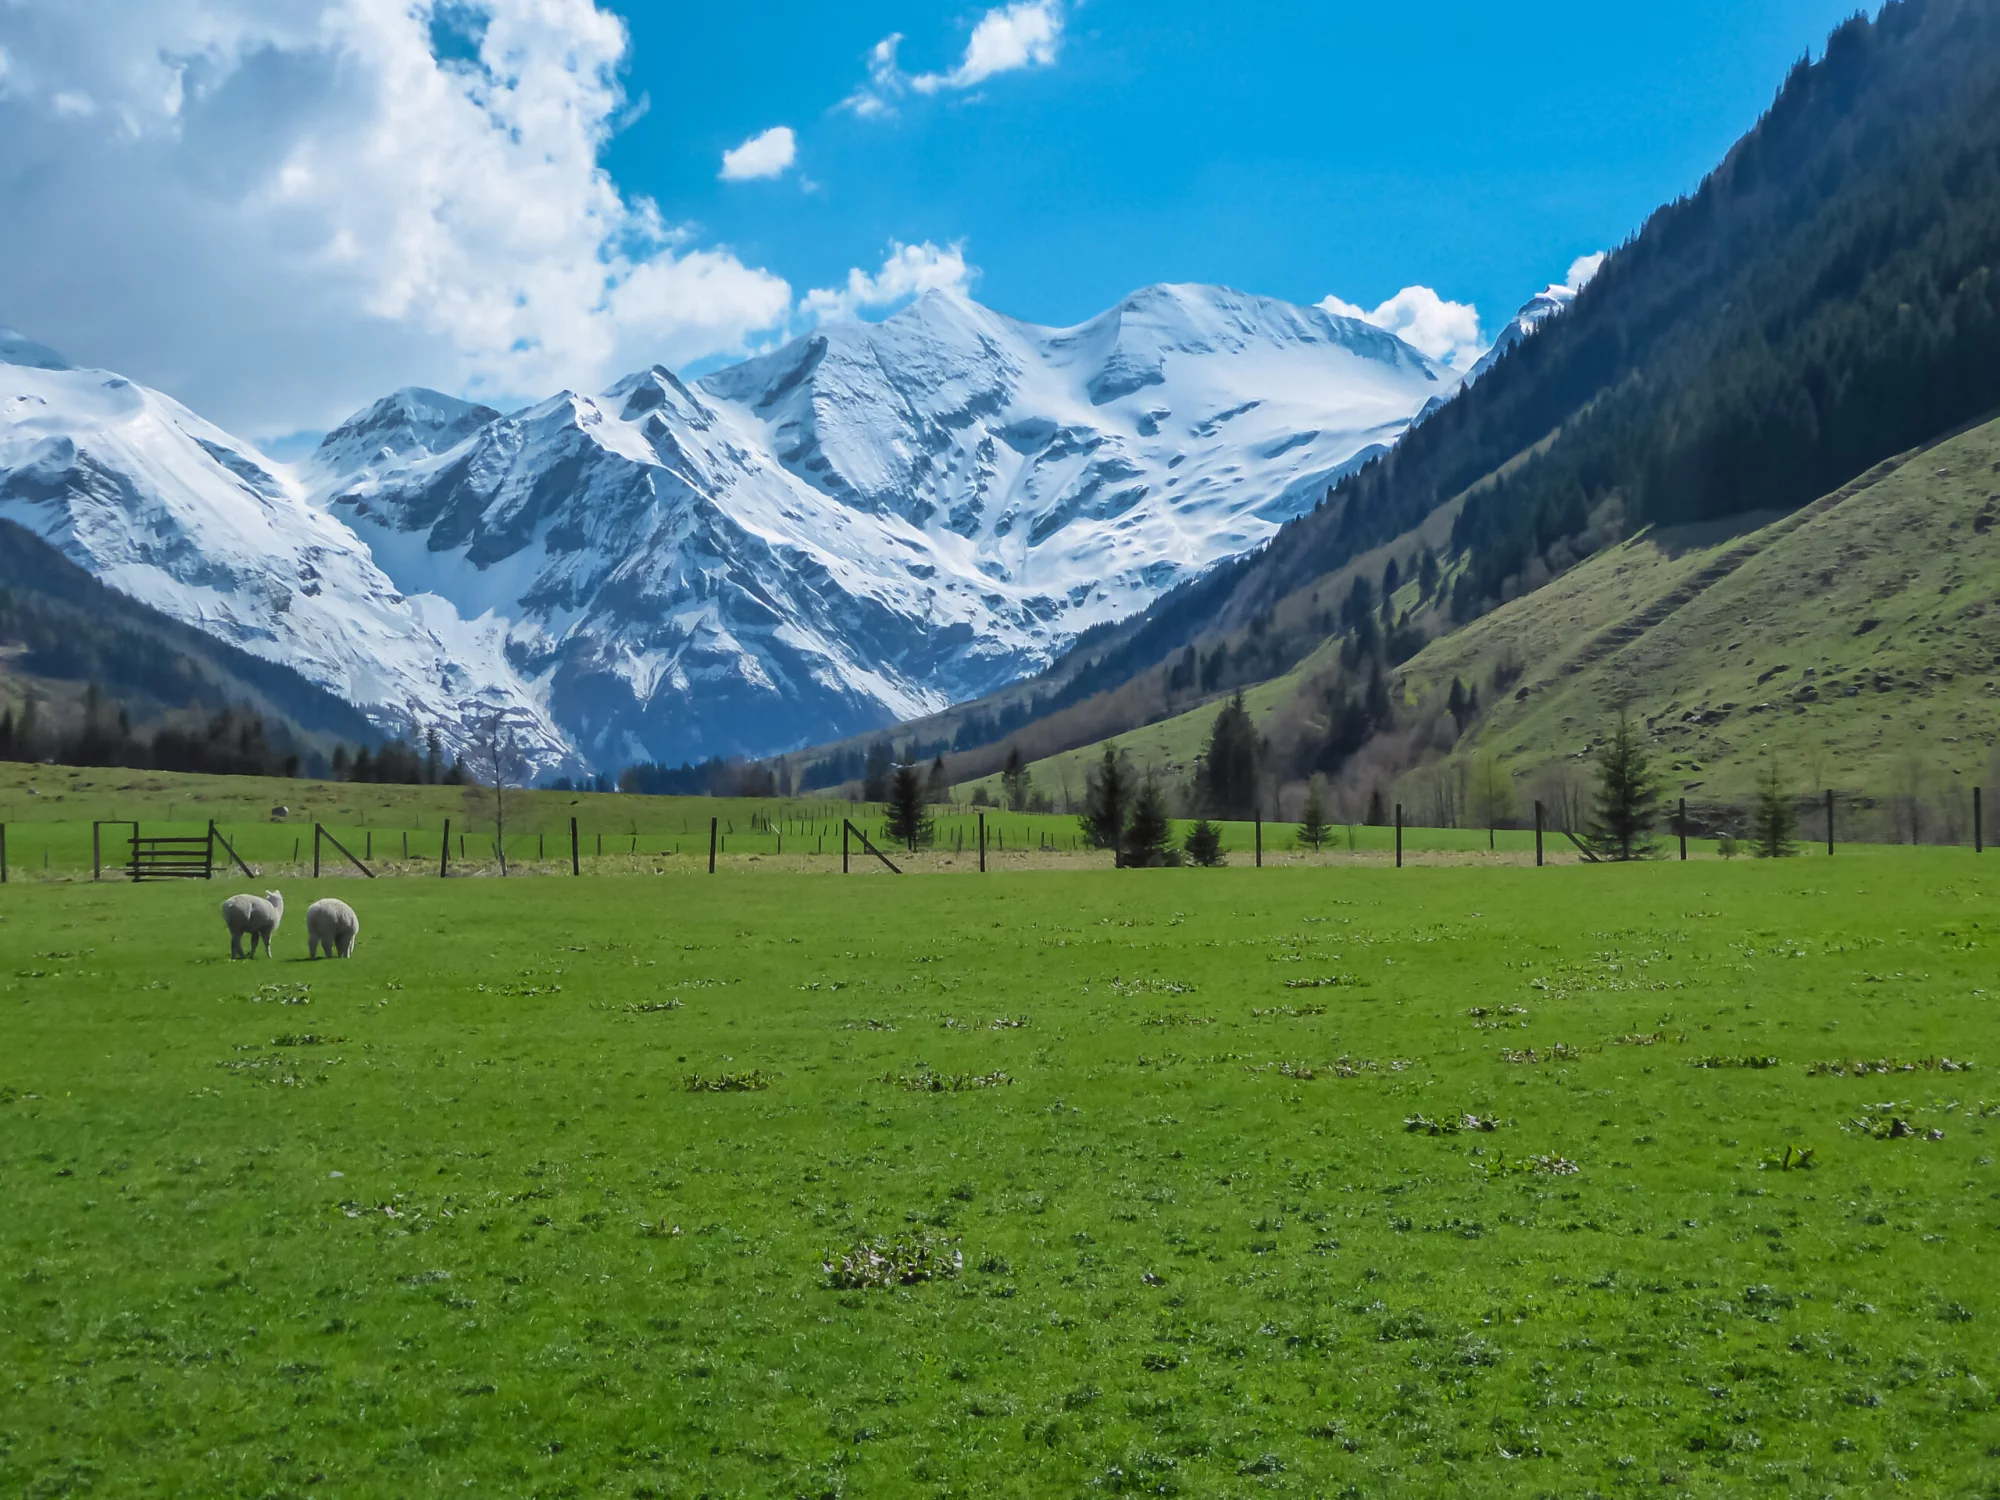 Schafe grasen auf einer saftig grünen Almwiese mit Panoramablick auf die schneebedeckten Gipfel der Hohen Tauern in Fusch am Großglockner, Salzburg, Österreich. Wunderschöne Natur in den abgelegenen österreichischen Alpen